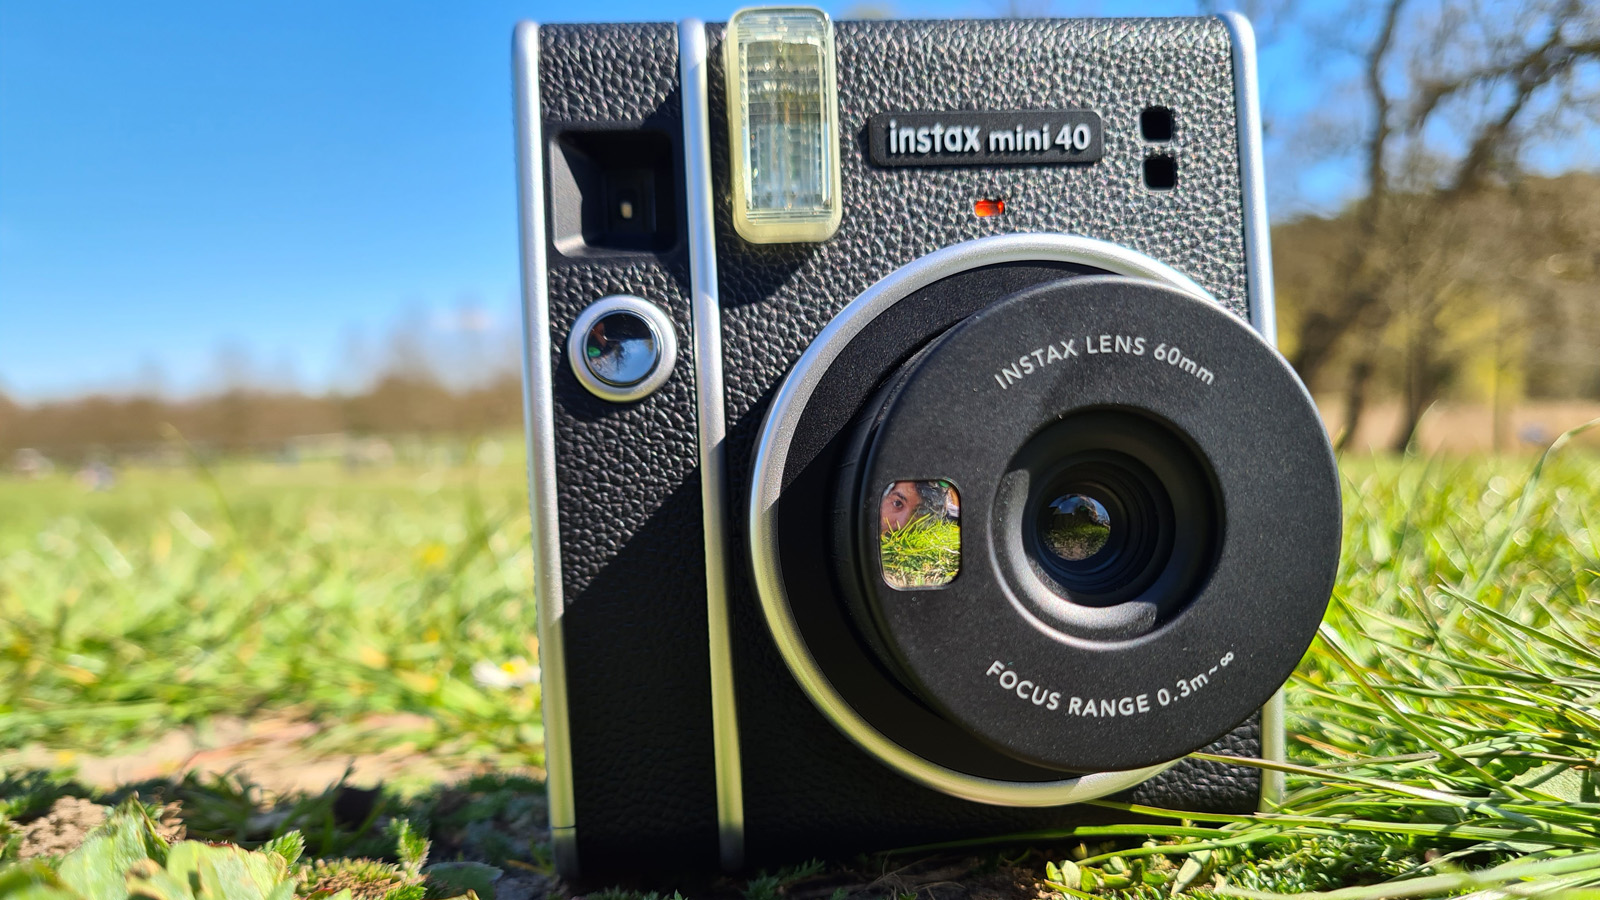 A Fujifilm Instax Mini 40 instant camera sat on a grass lawn